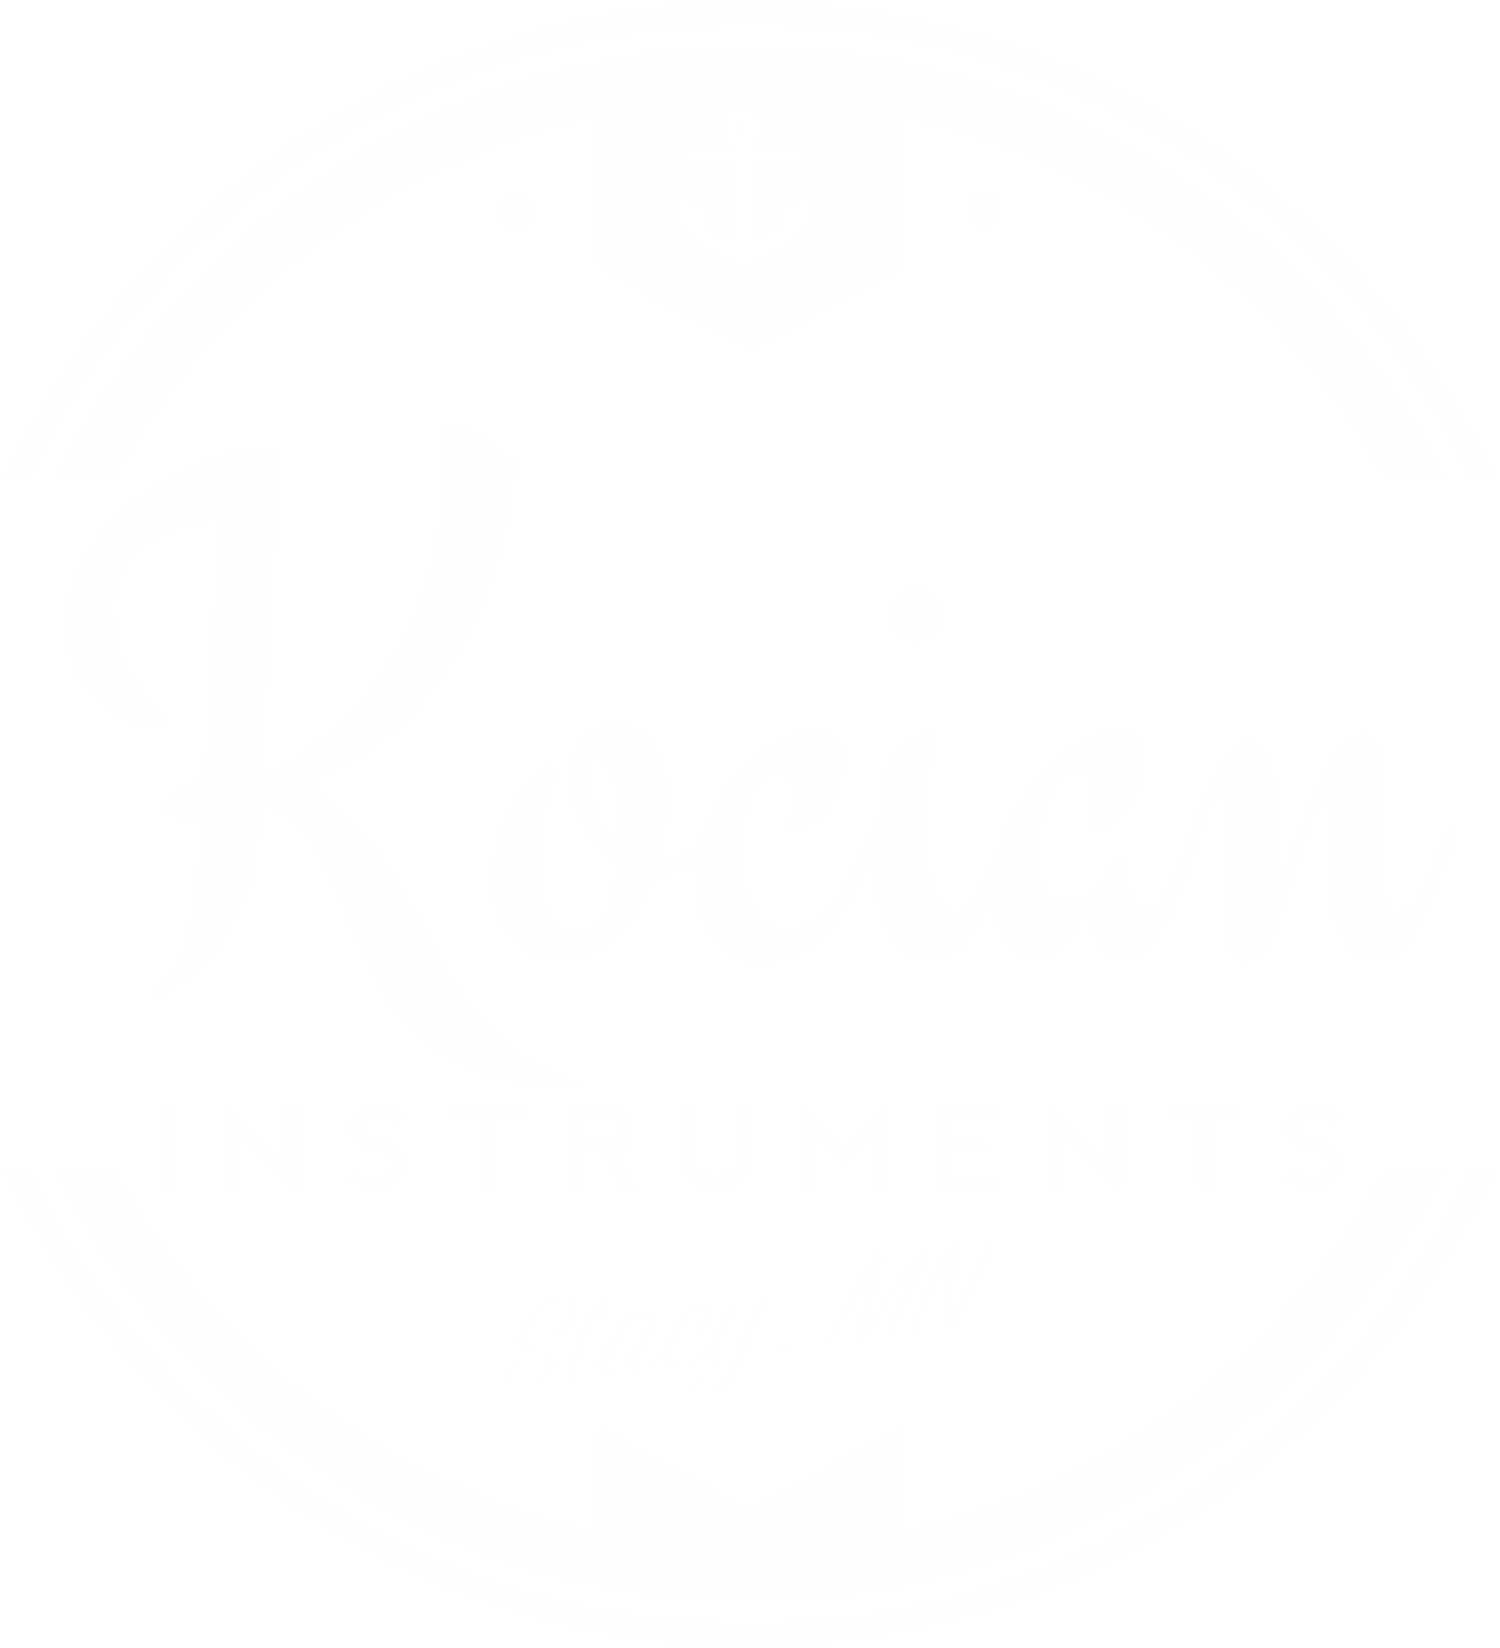 www.kocianinstruments.com